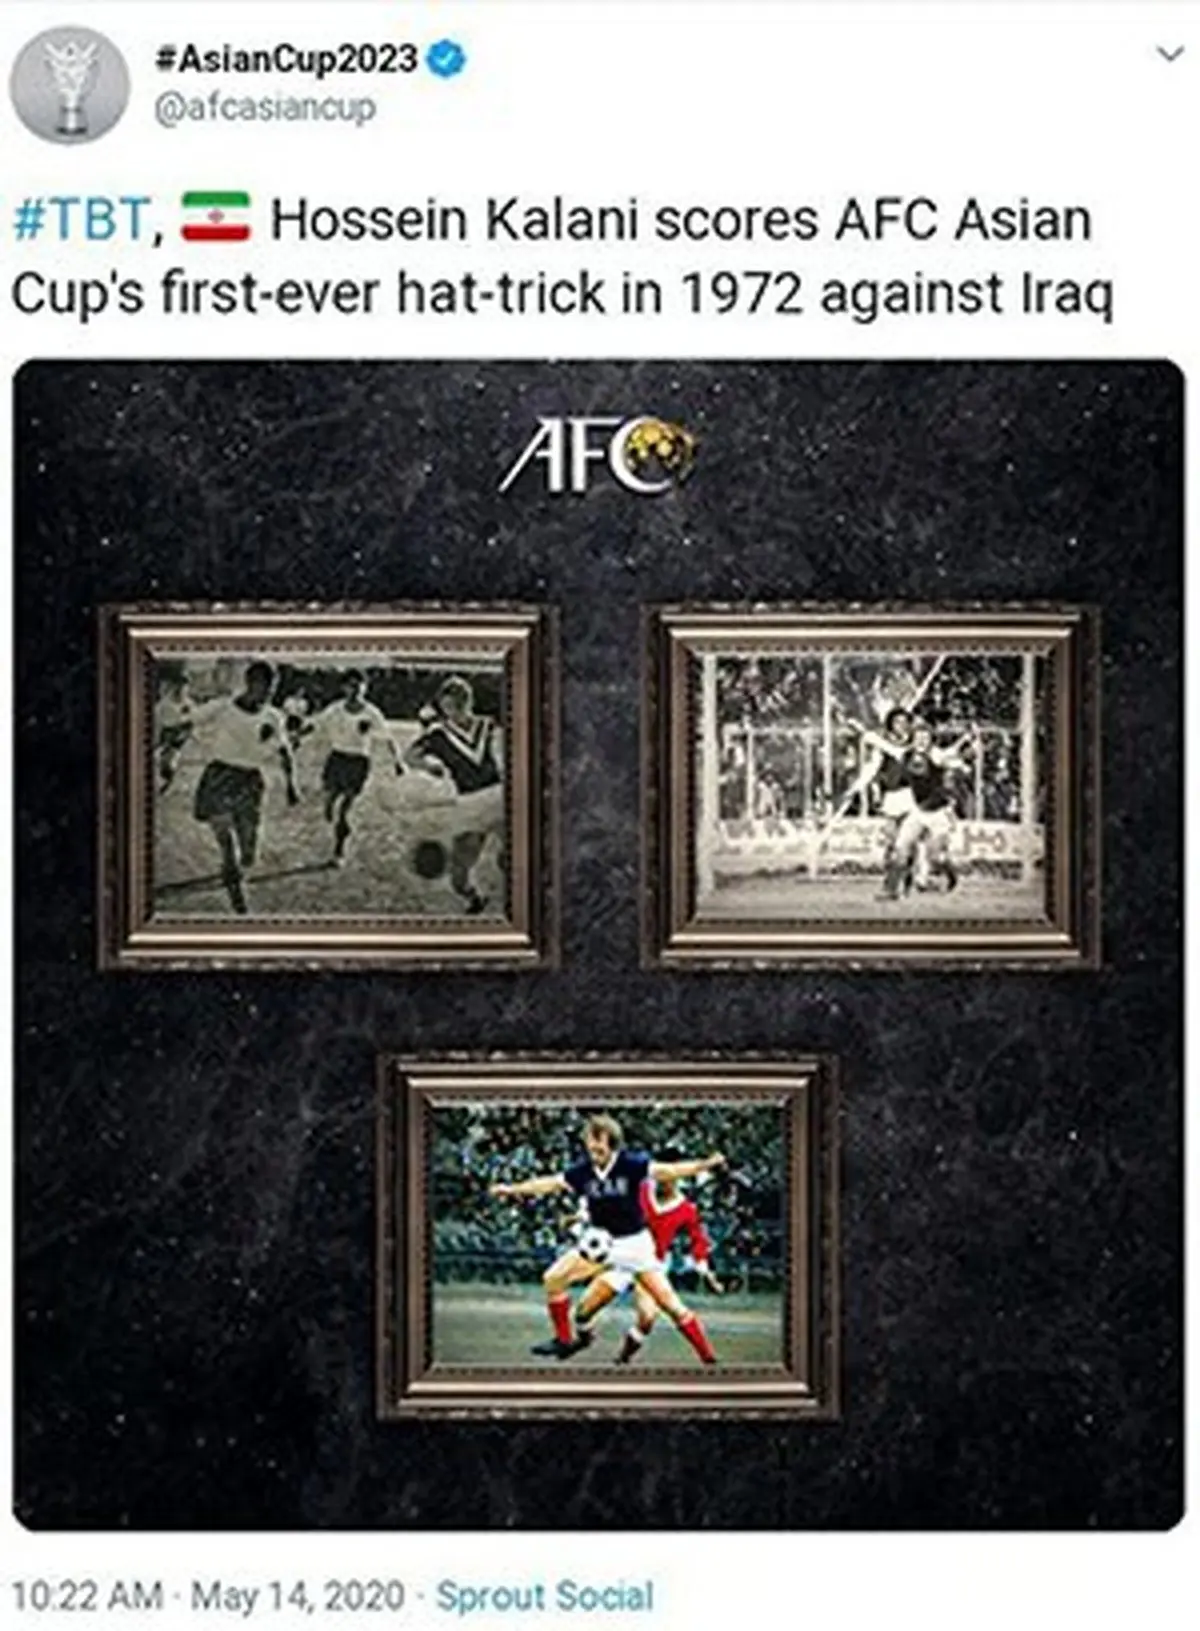 رکورد اولین هت‌تریک جام ملت های آسیا که به نام حسین کلانی ثبت شده است. 